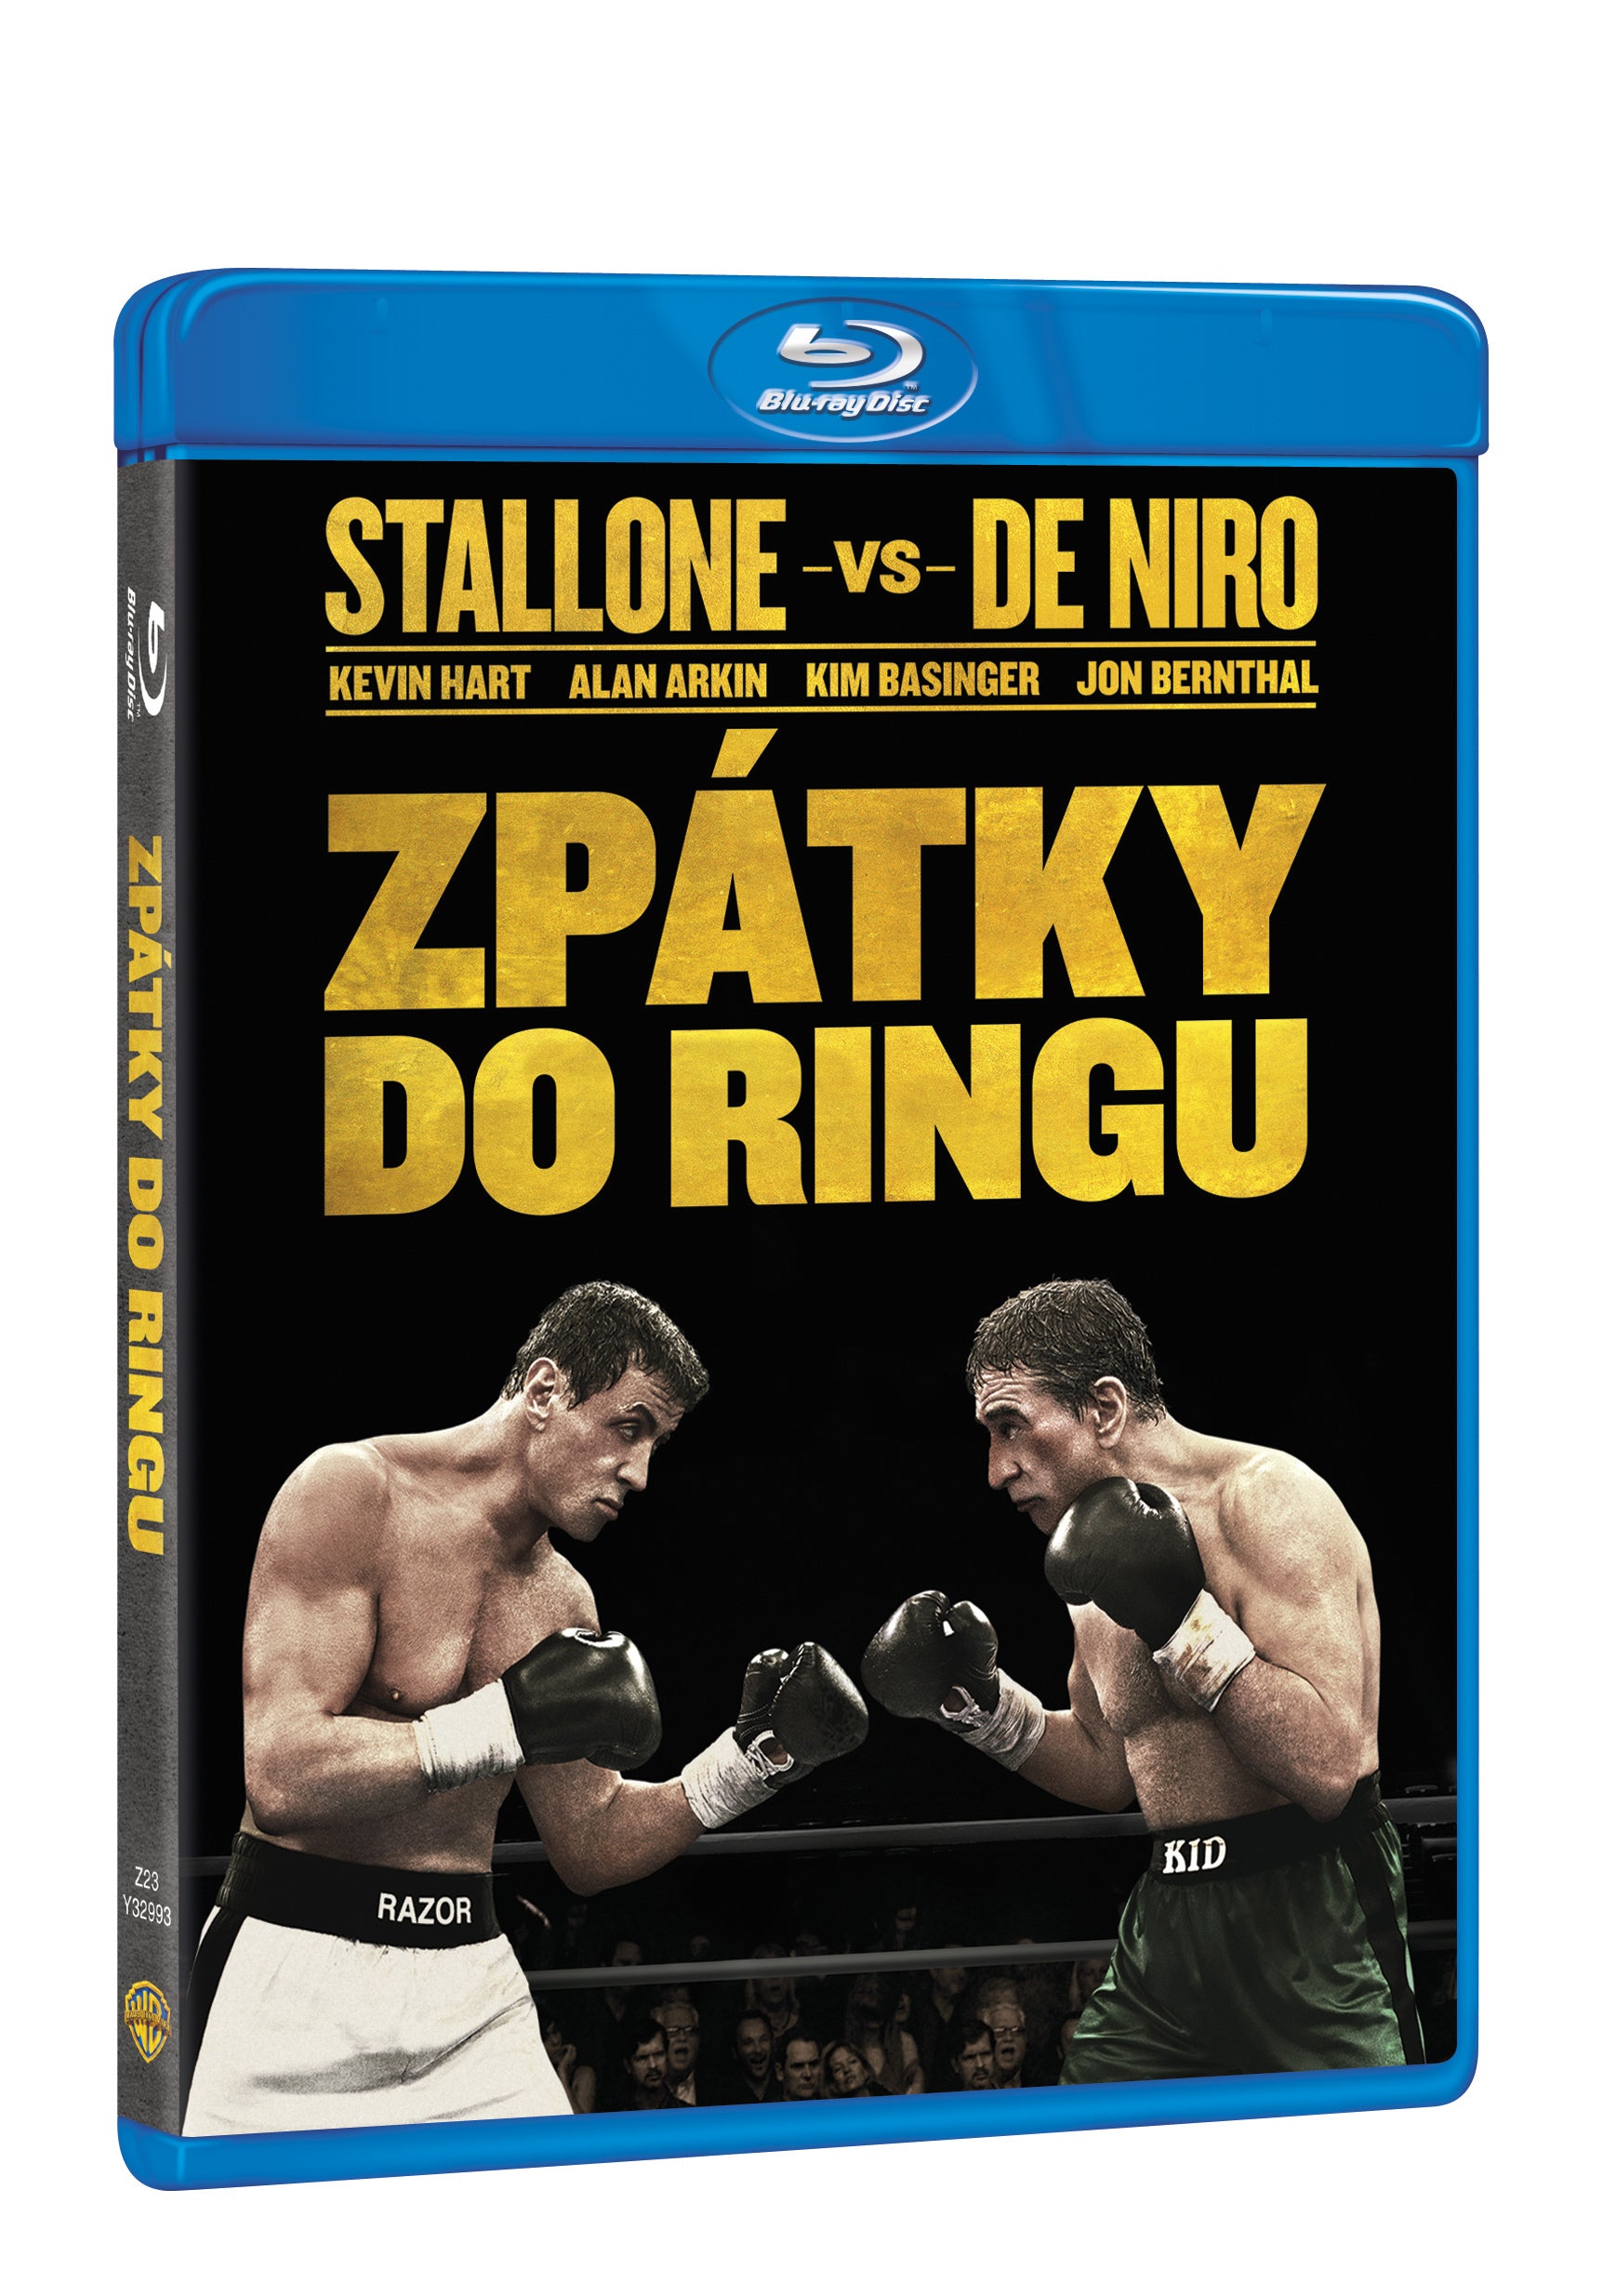 Zpatky do ringu BD / Grudge Match - Czech version